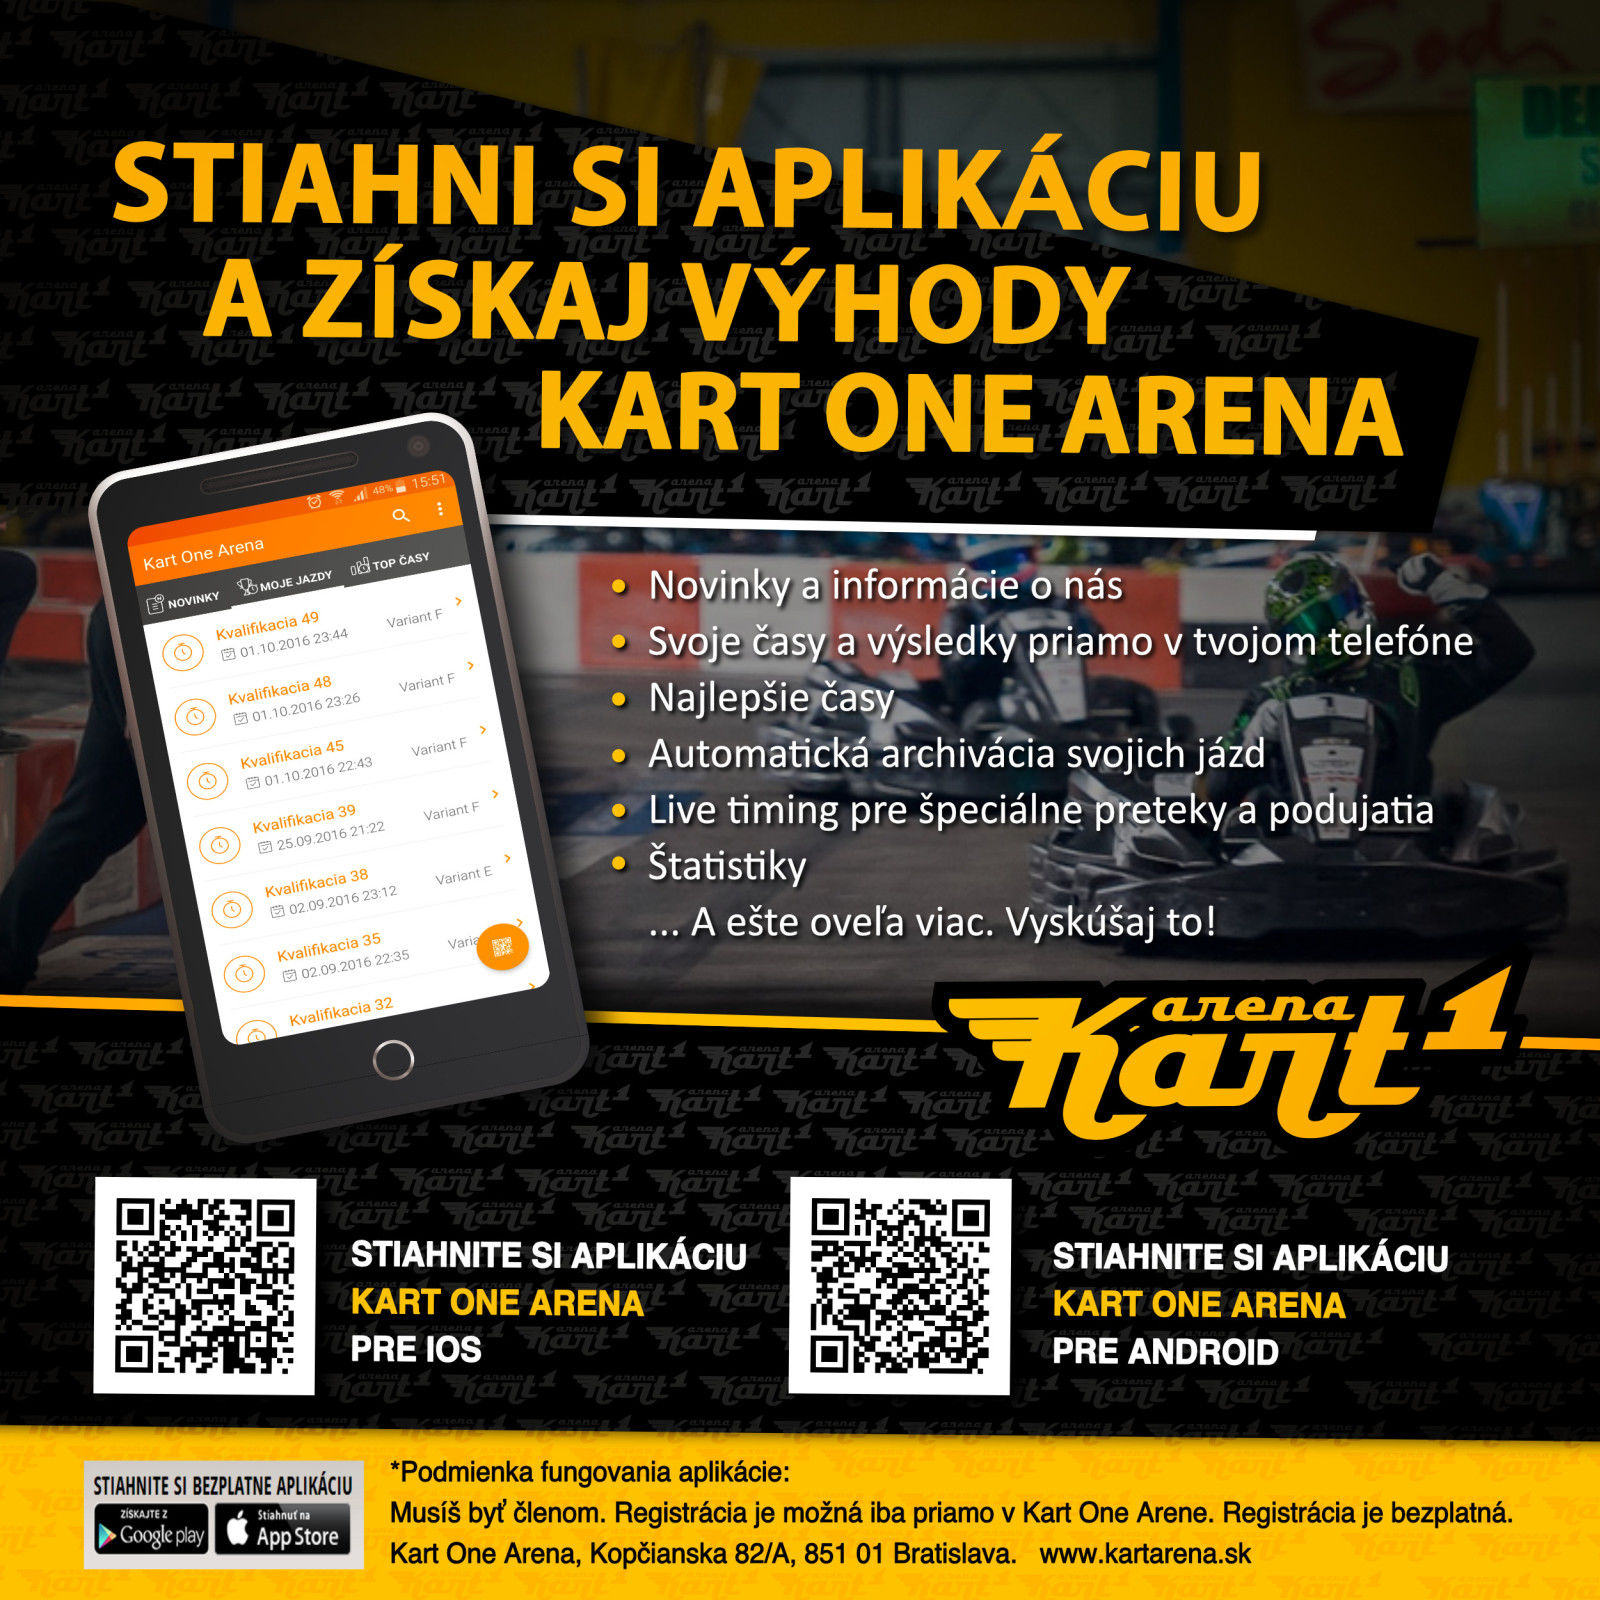 Kart1 Arena má novú appku, už ste ju vyskúšali?